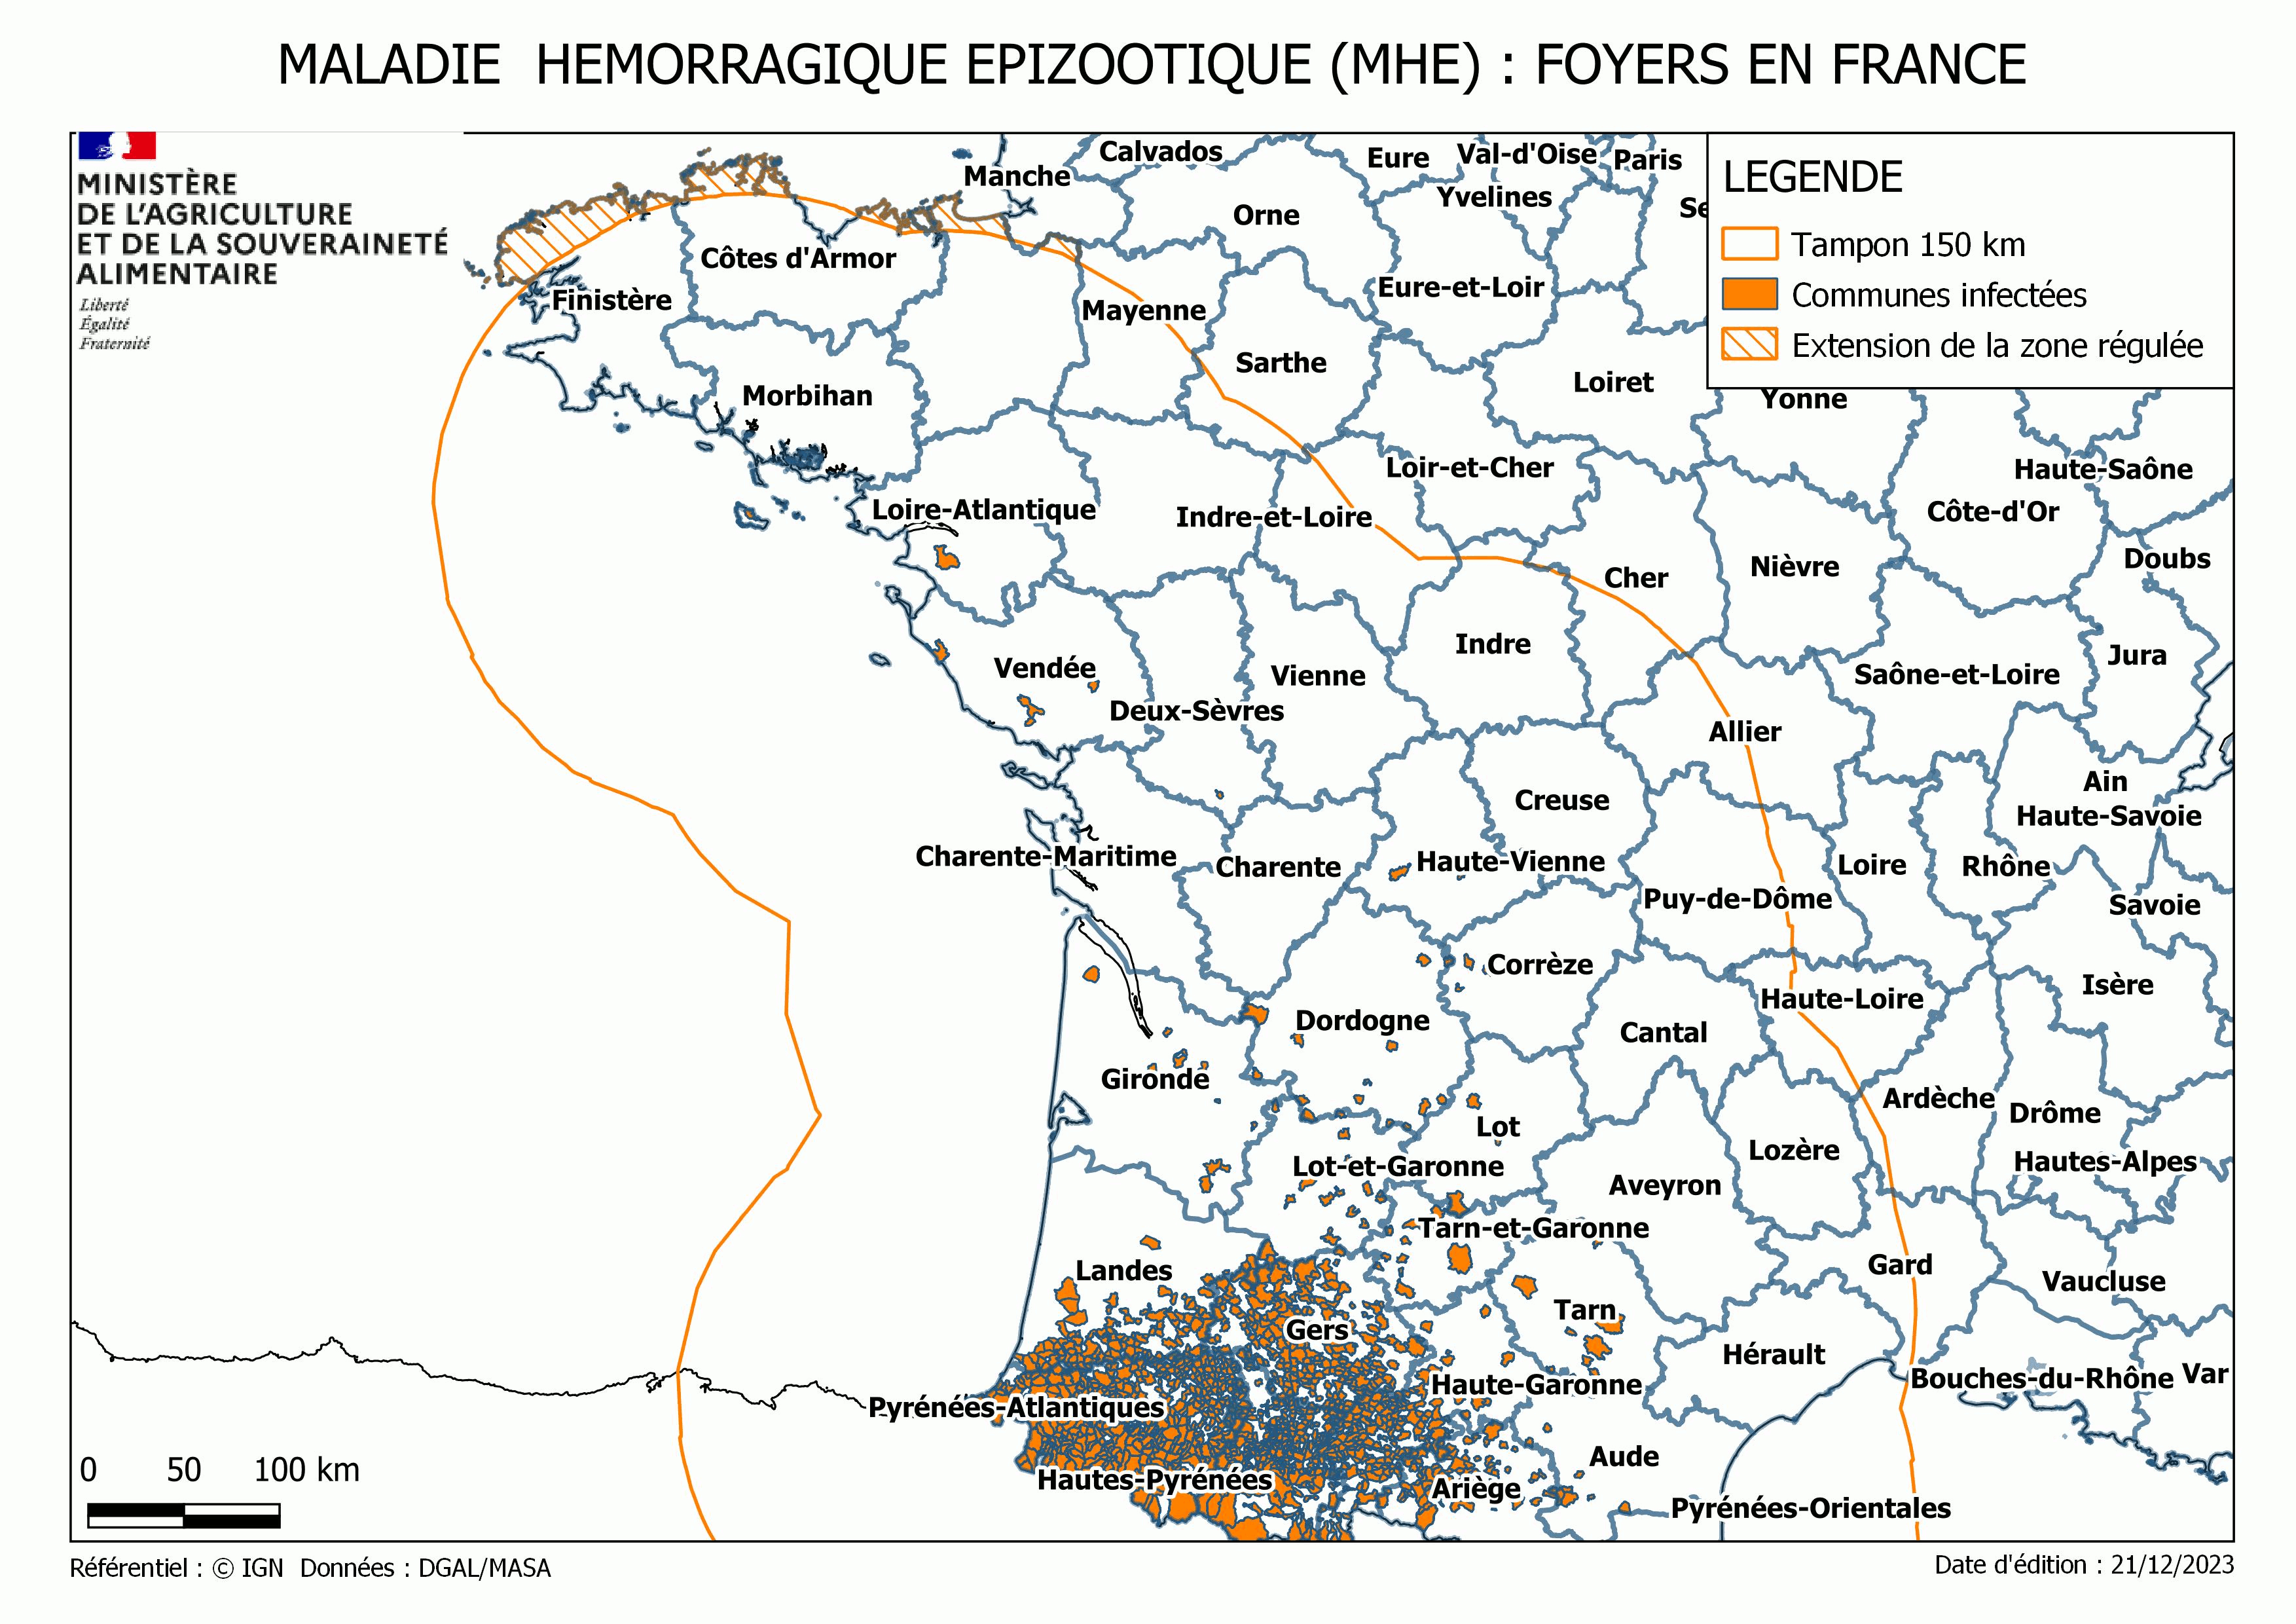 Toutes les communes de Bretagne sont en zone régulée de la MHE